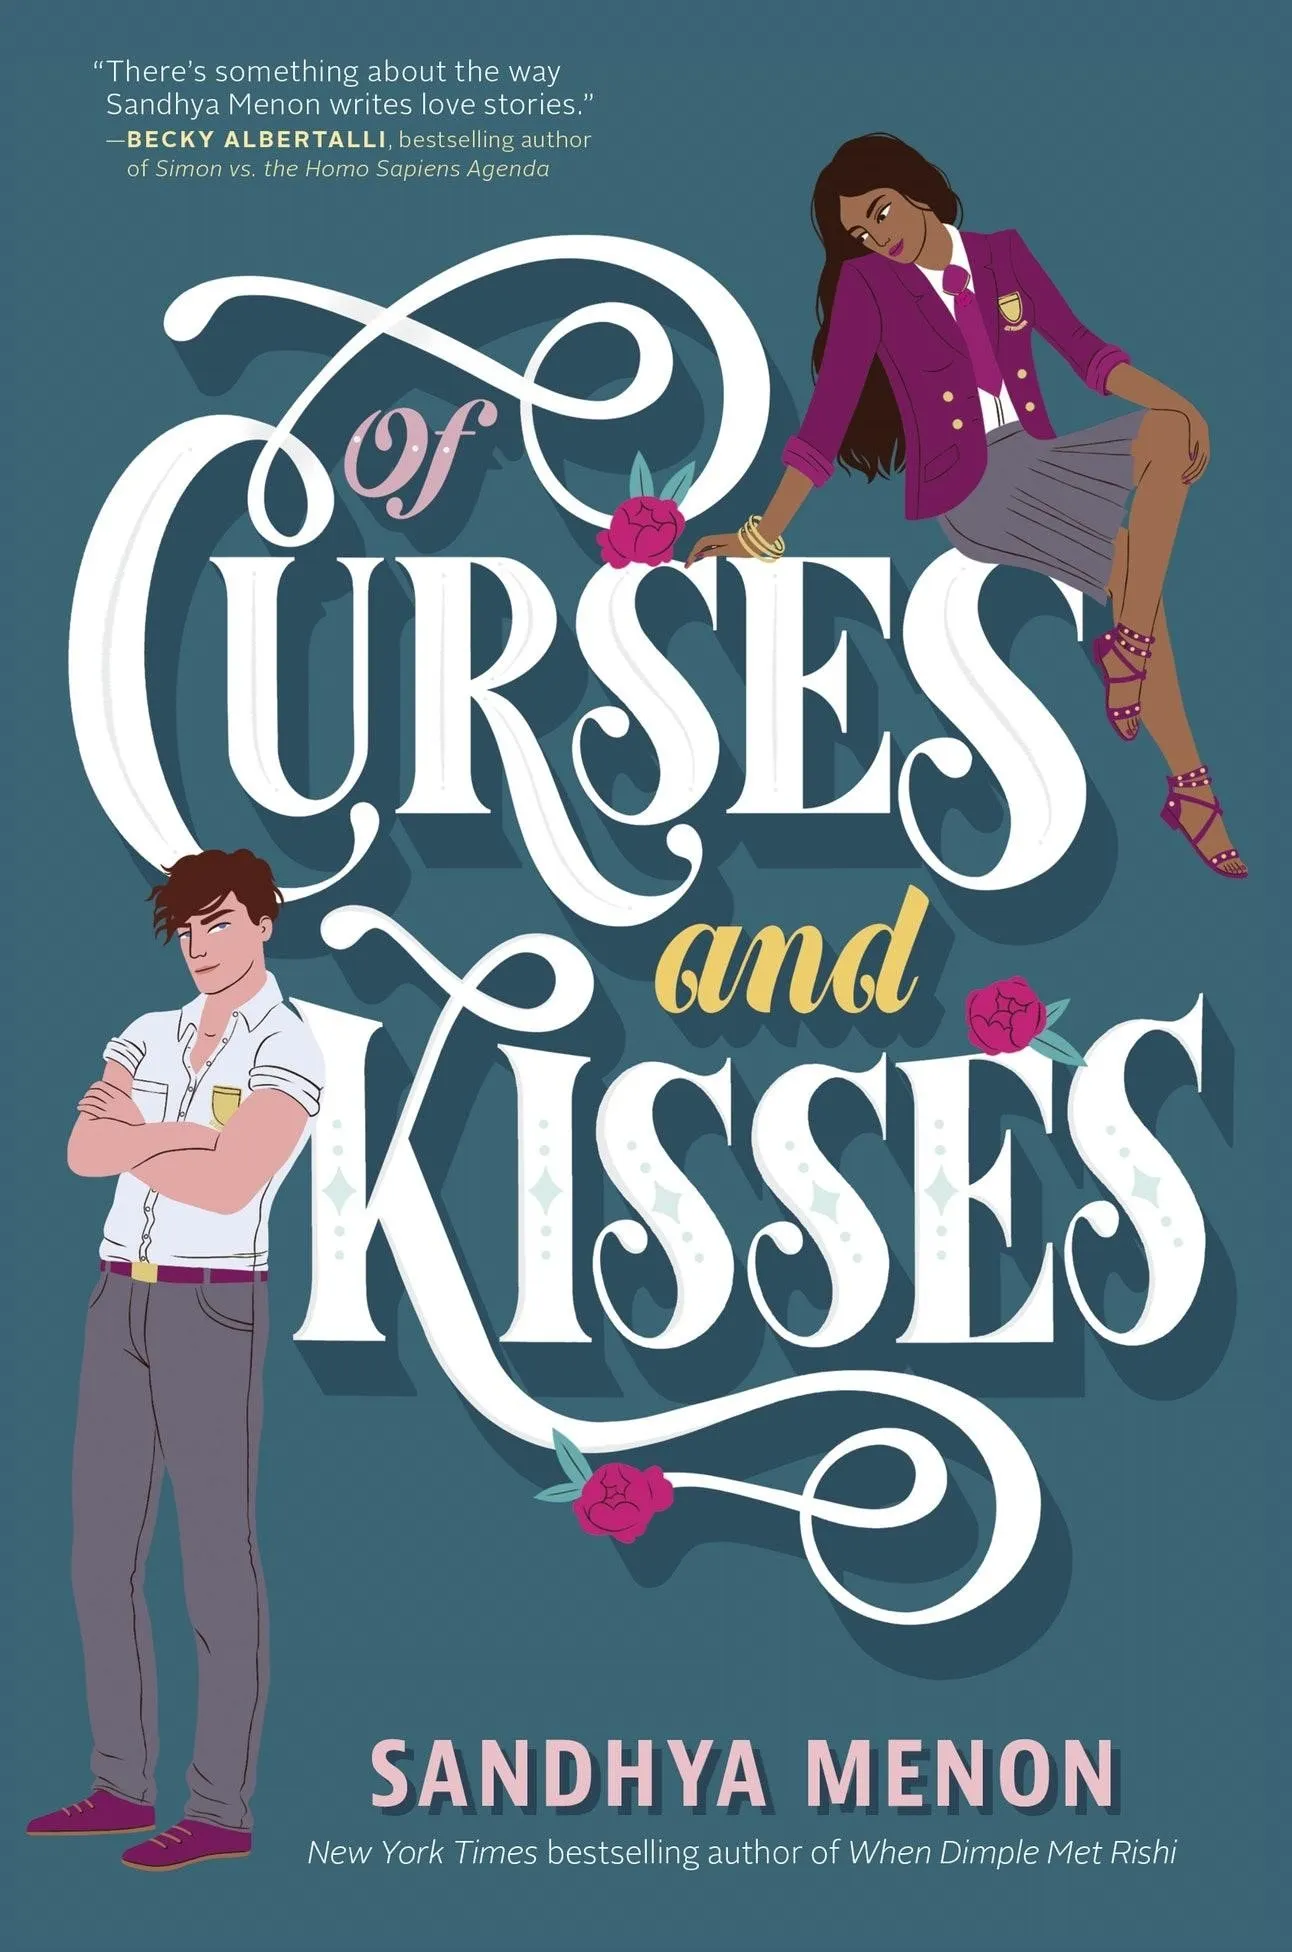 Of Curses & Kisses